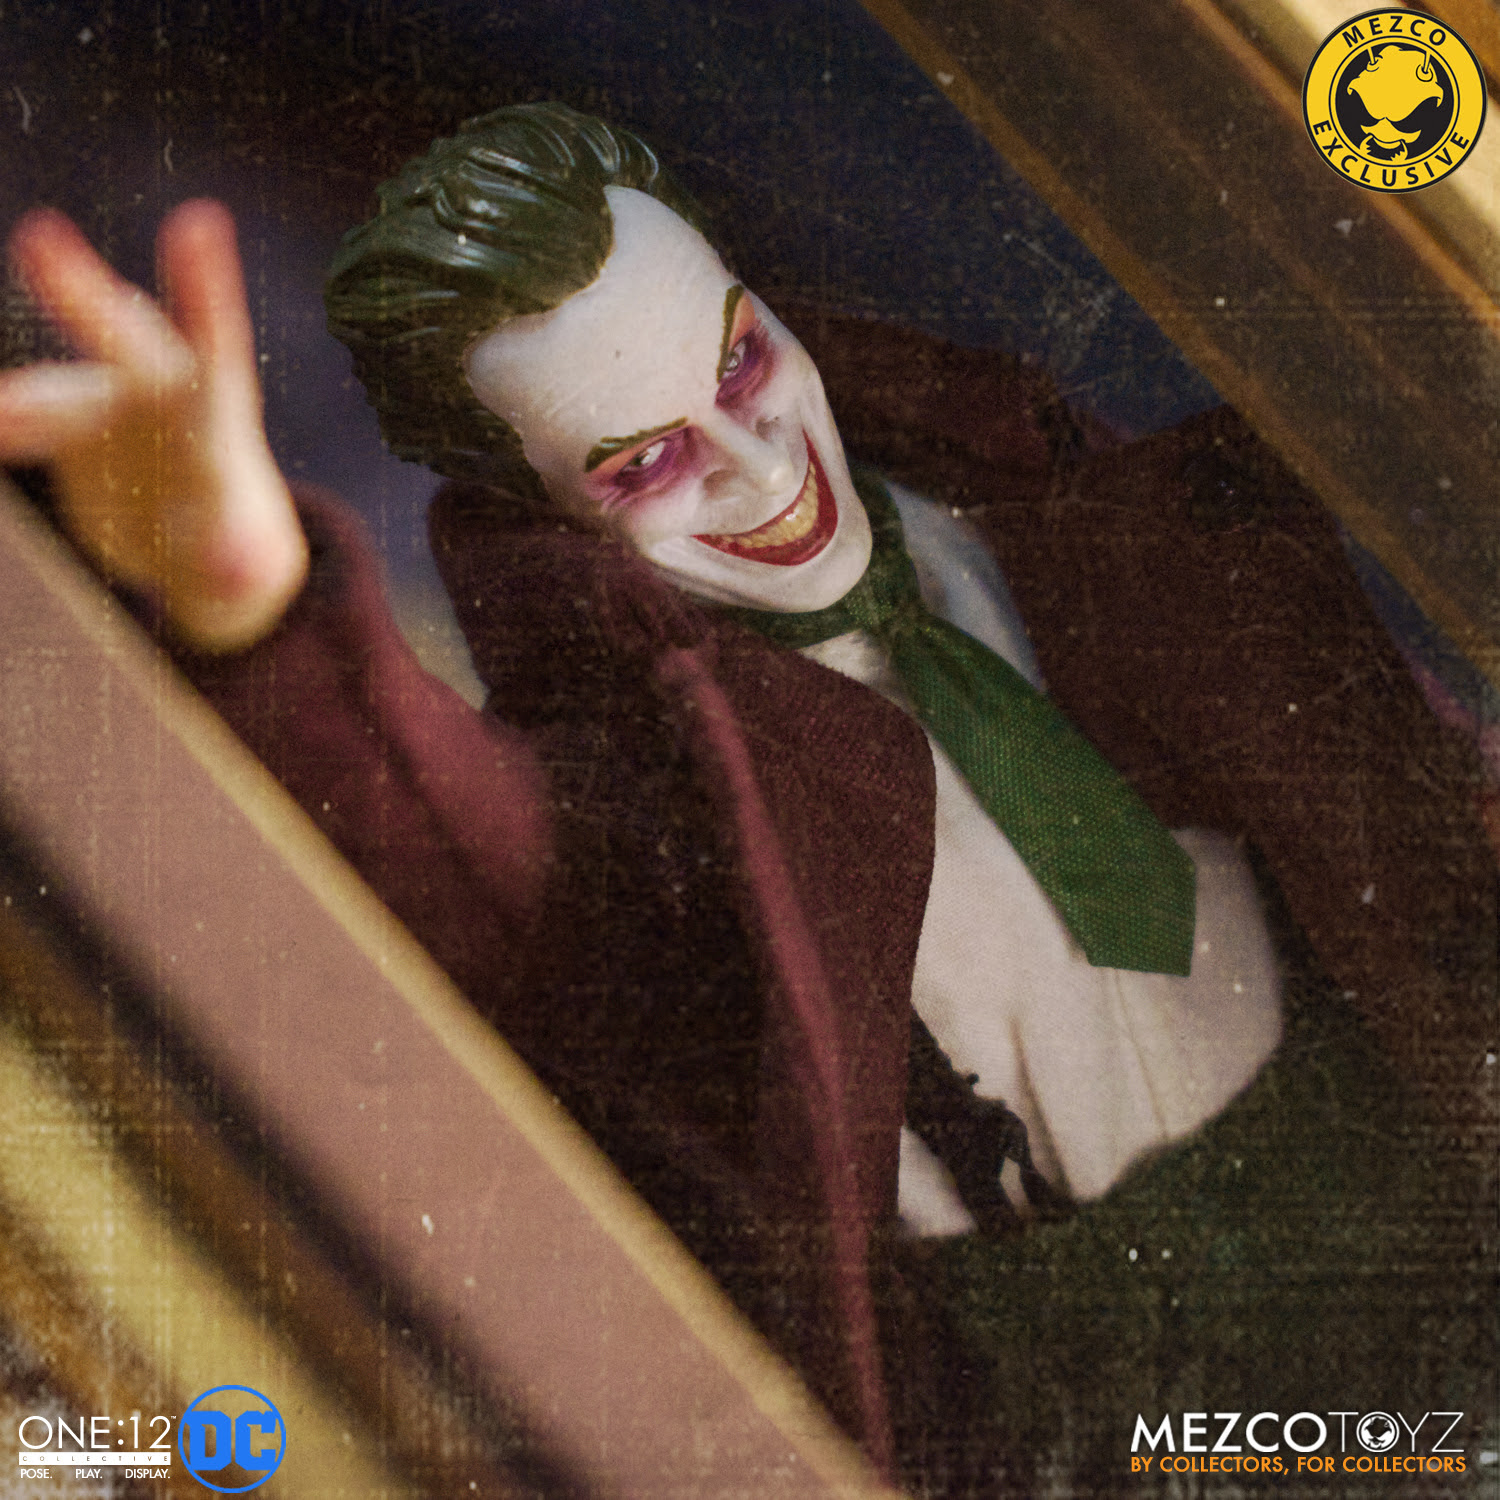 Mezco announces Gotham by Gaslight Joker - available now | BrutalGamer